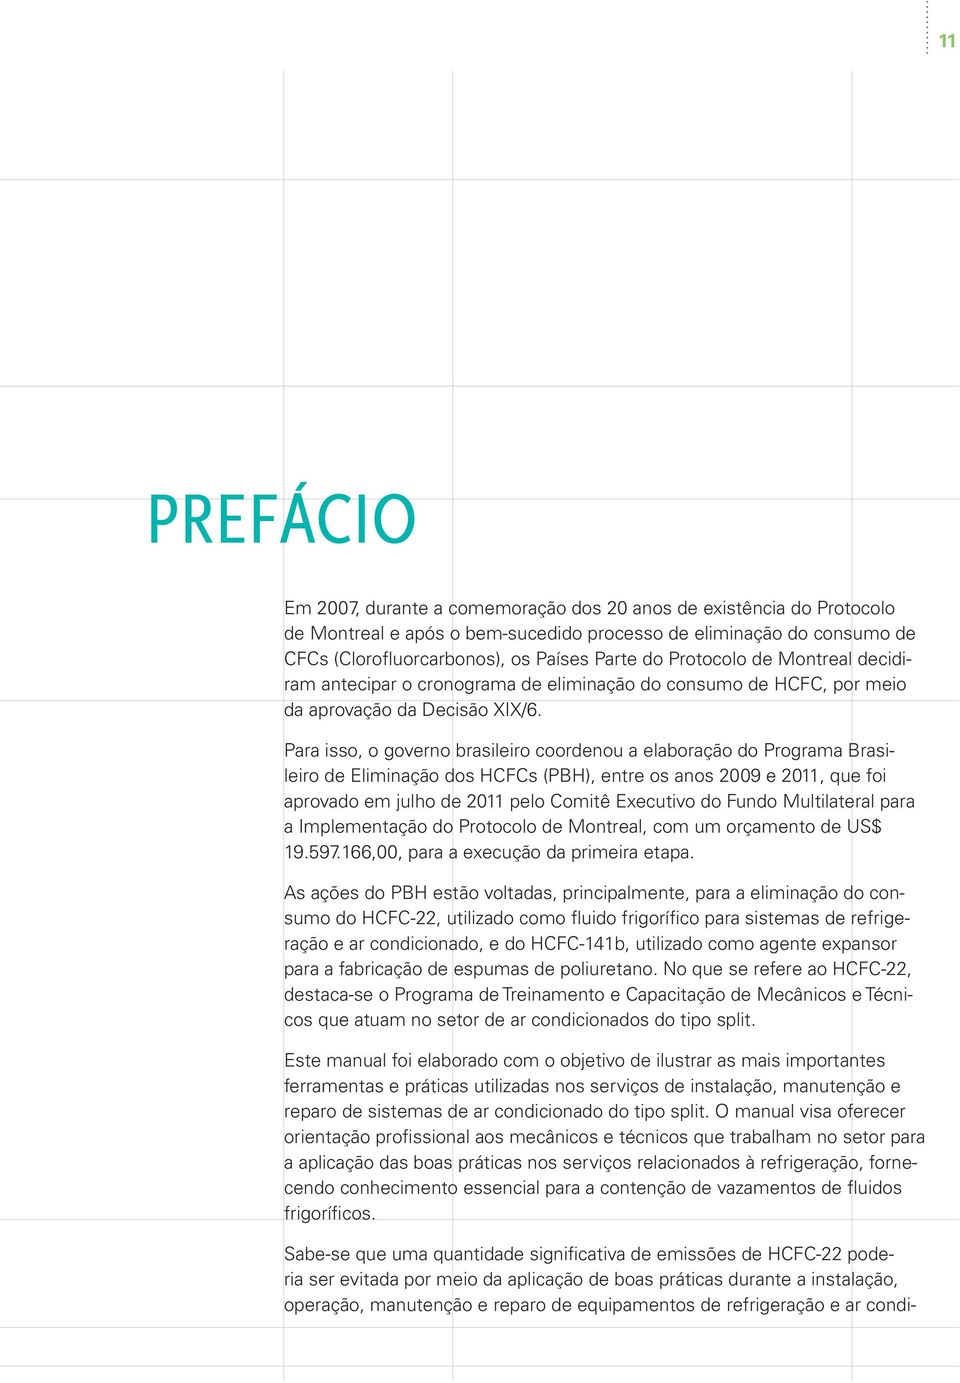 Para isso, o governo brasileiro coordenou a elaboração do Programa Brasileiro de Eliminação dos HCFCs (PBH), entre os anos 2009 e 2011, que foi aprovado em julho de 2011 pelo Comitê Executivo do